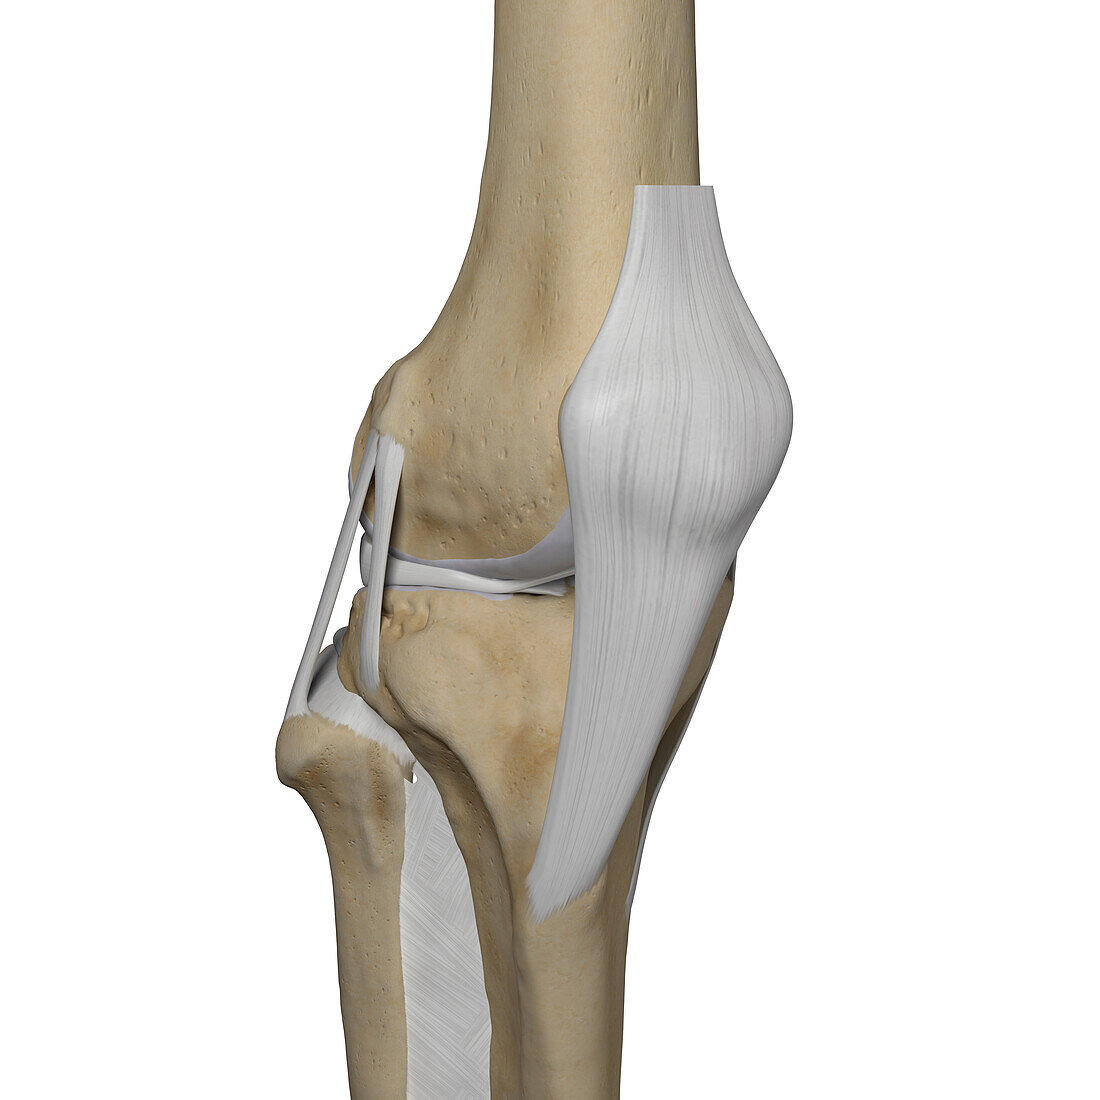 Human knee, illustration